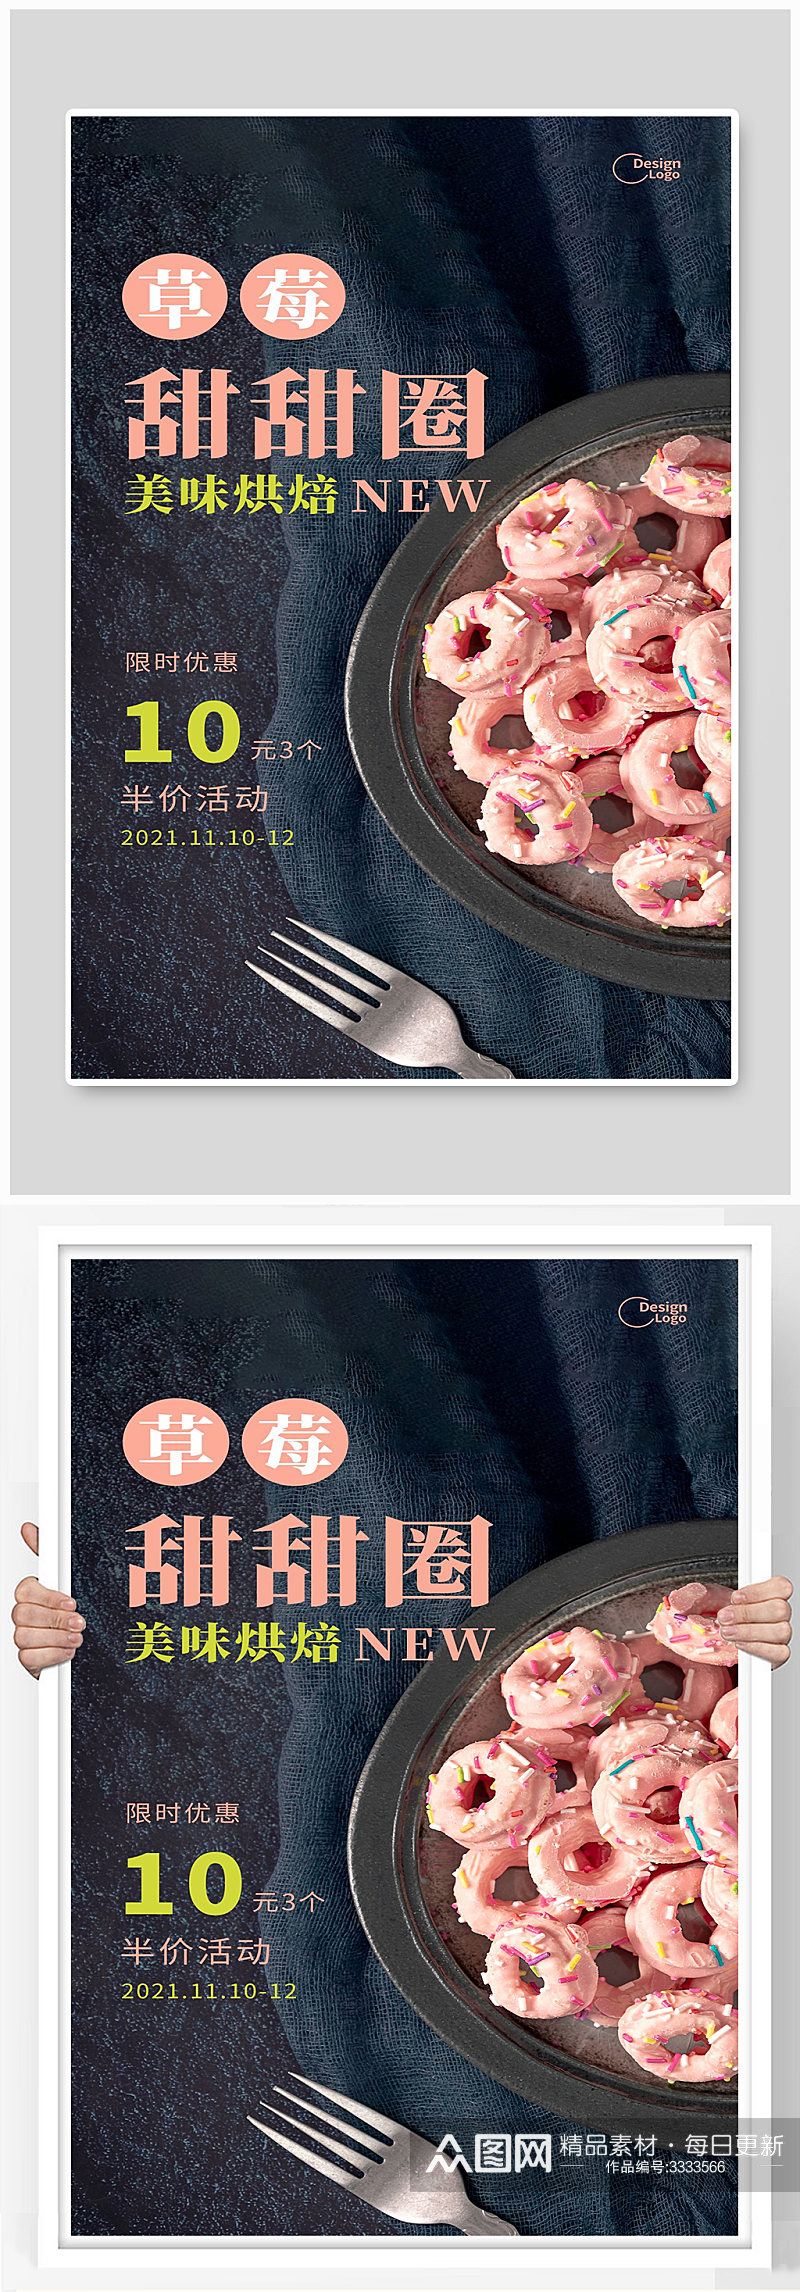 甜甜圈宣传海报设计素材